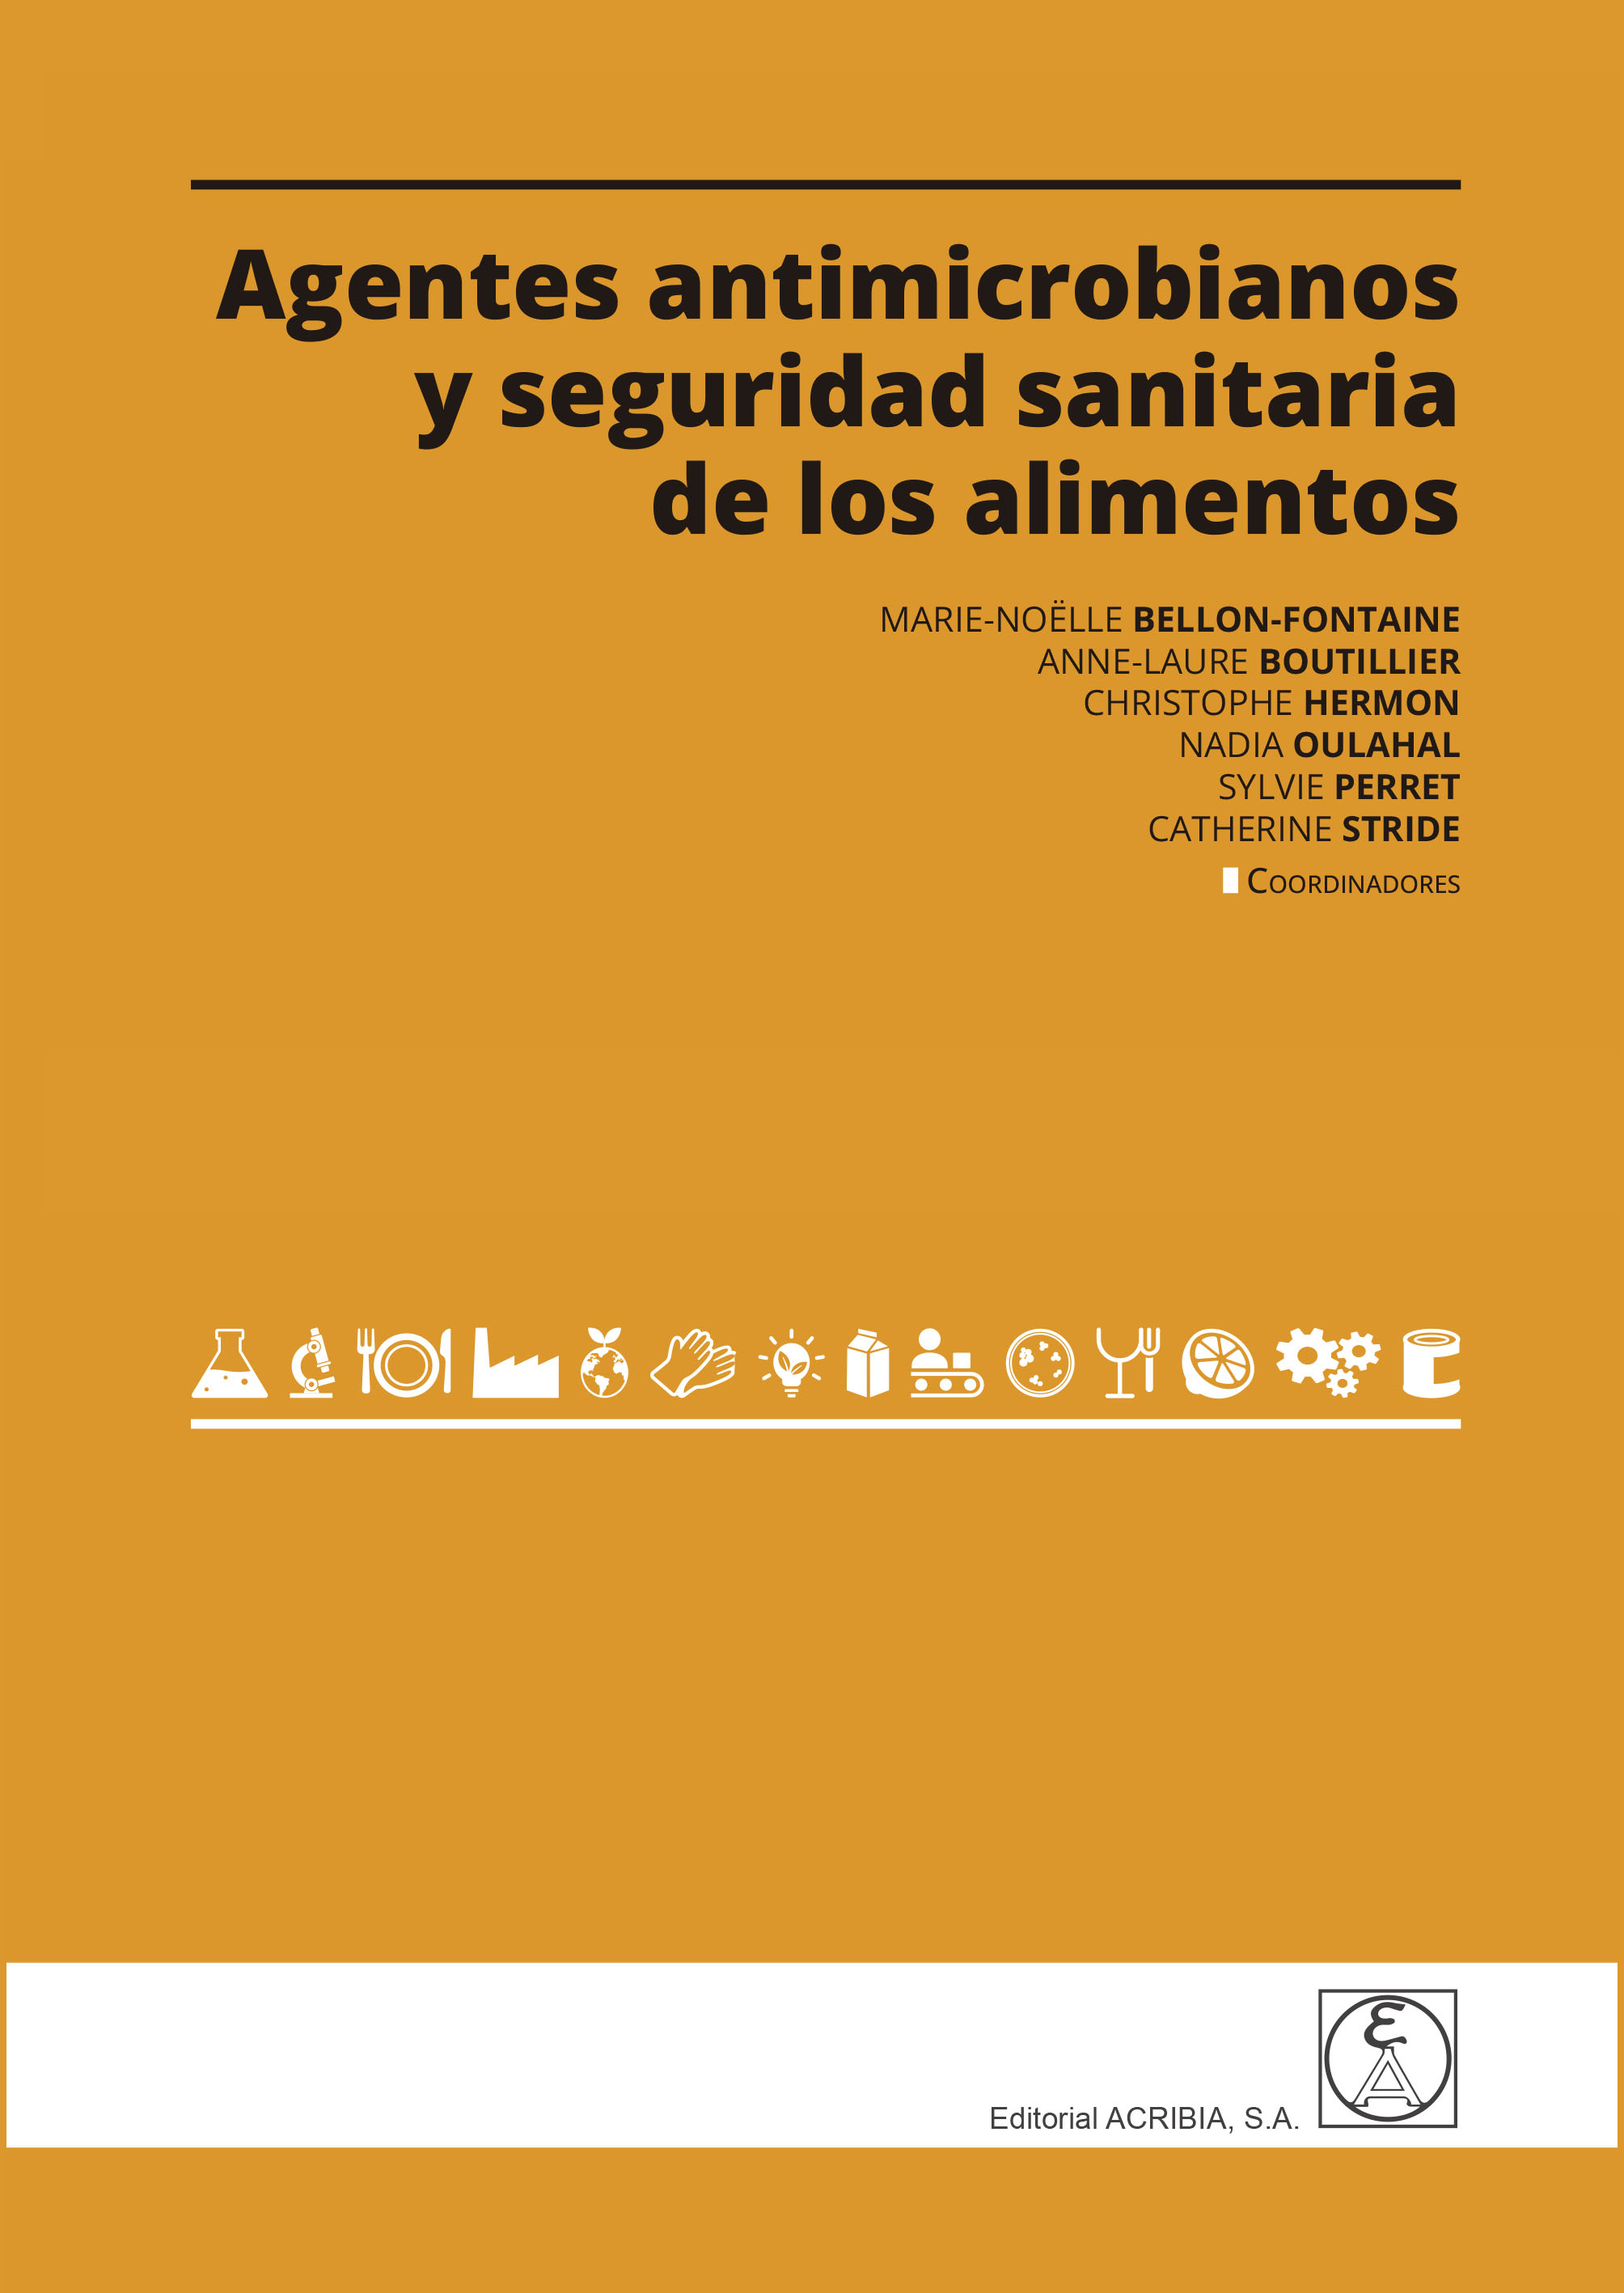 Imagen de portada del libro Agentes antimicrobianos y seguridad sanitaria de los alimentos